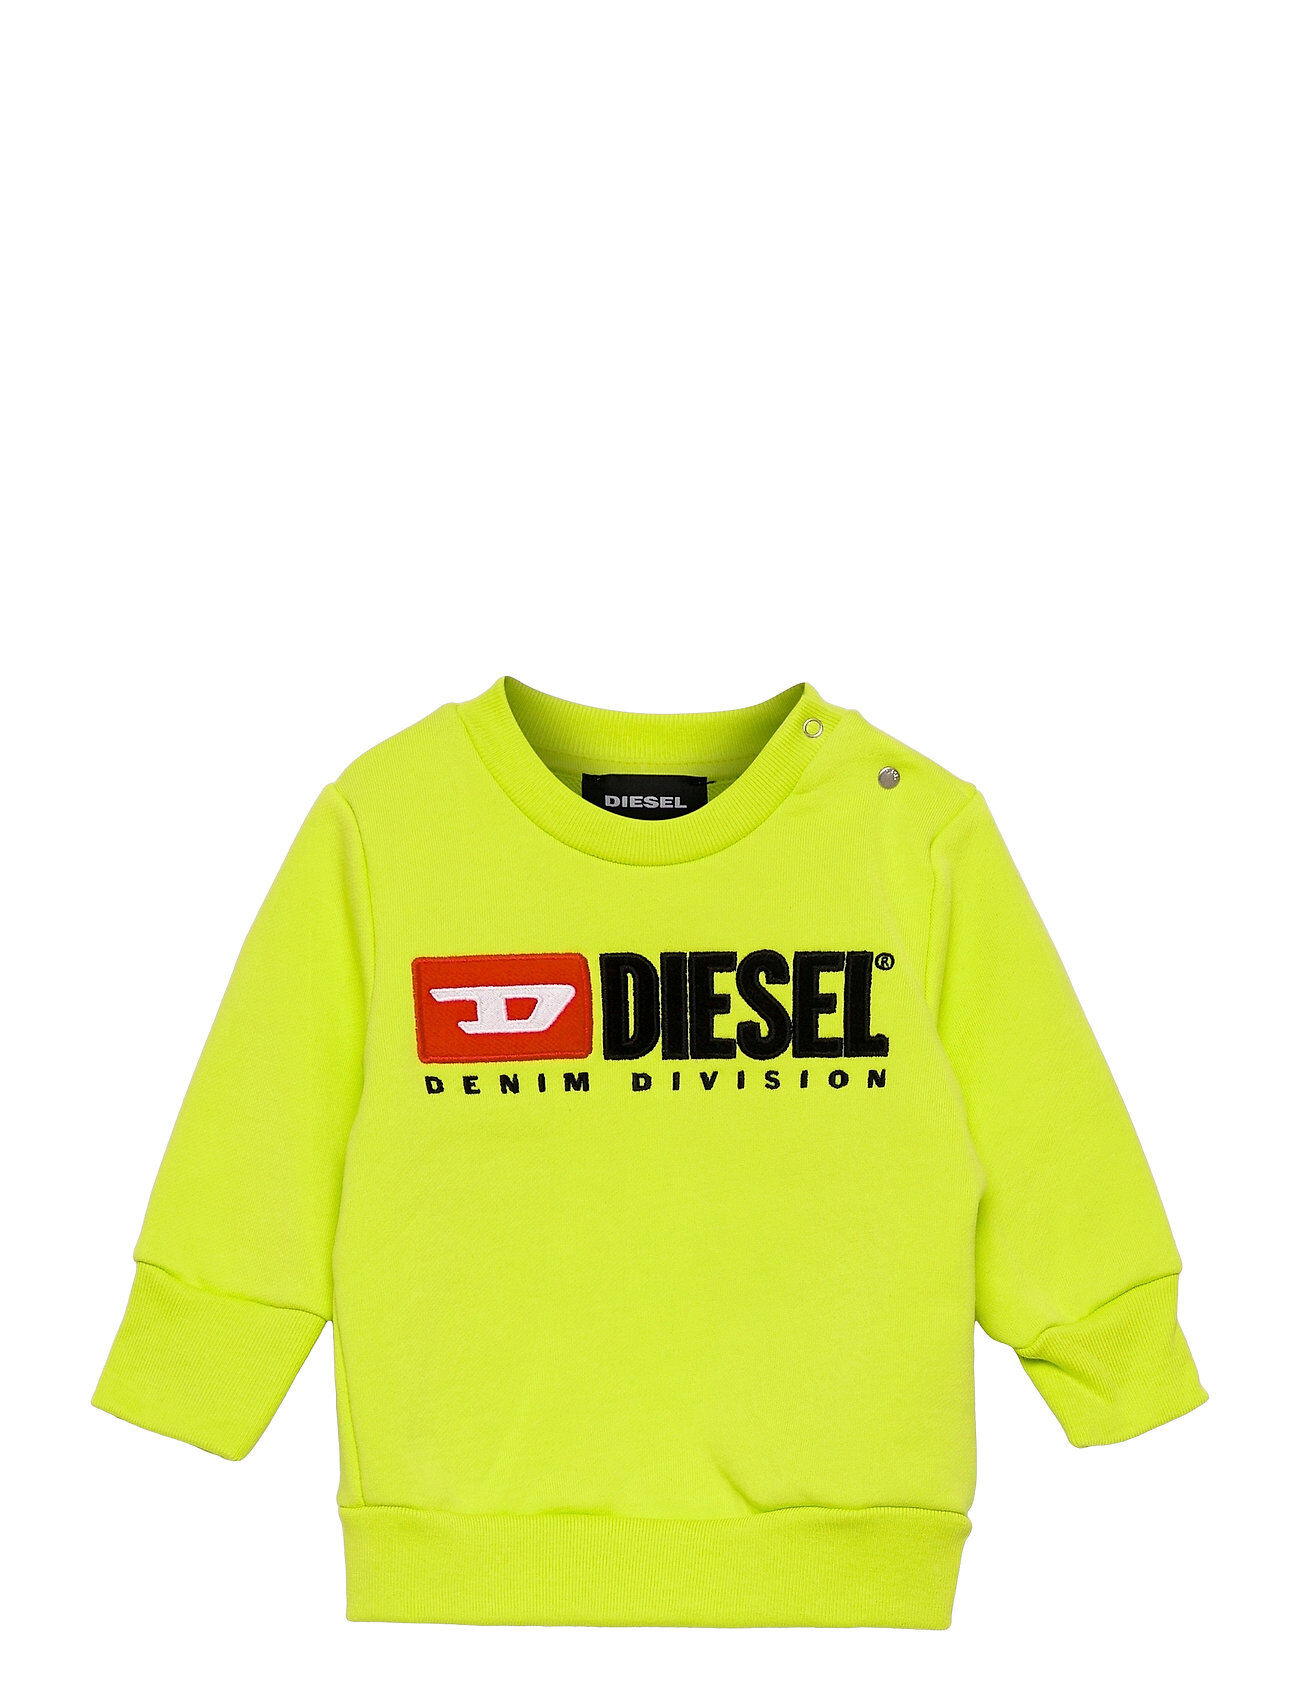 Diesel Screwdivisionb Sweat-Shirt Sweat-shirt Genser Gul Diesel